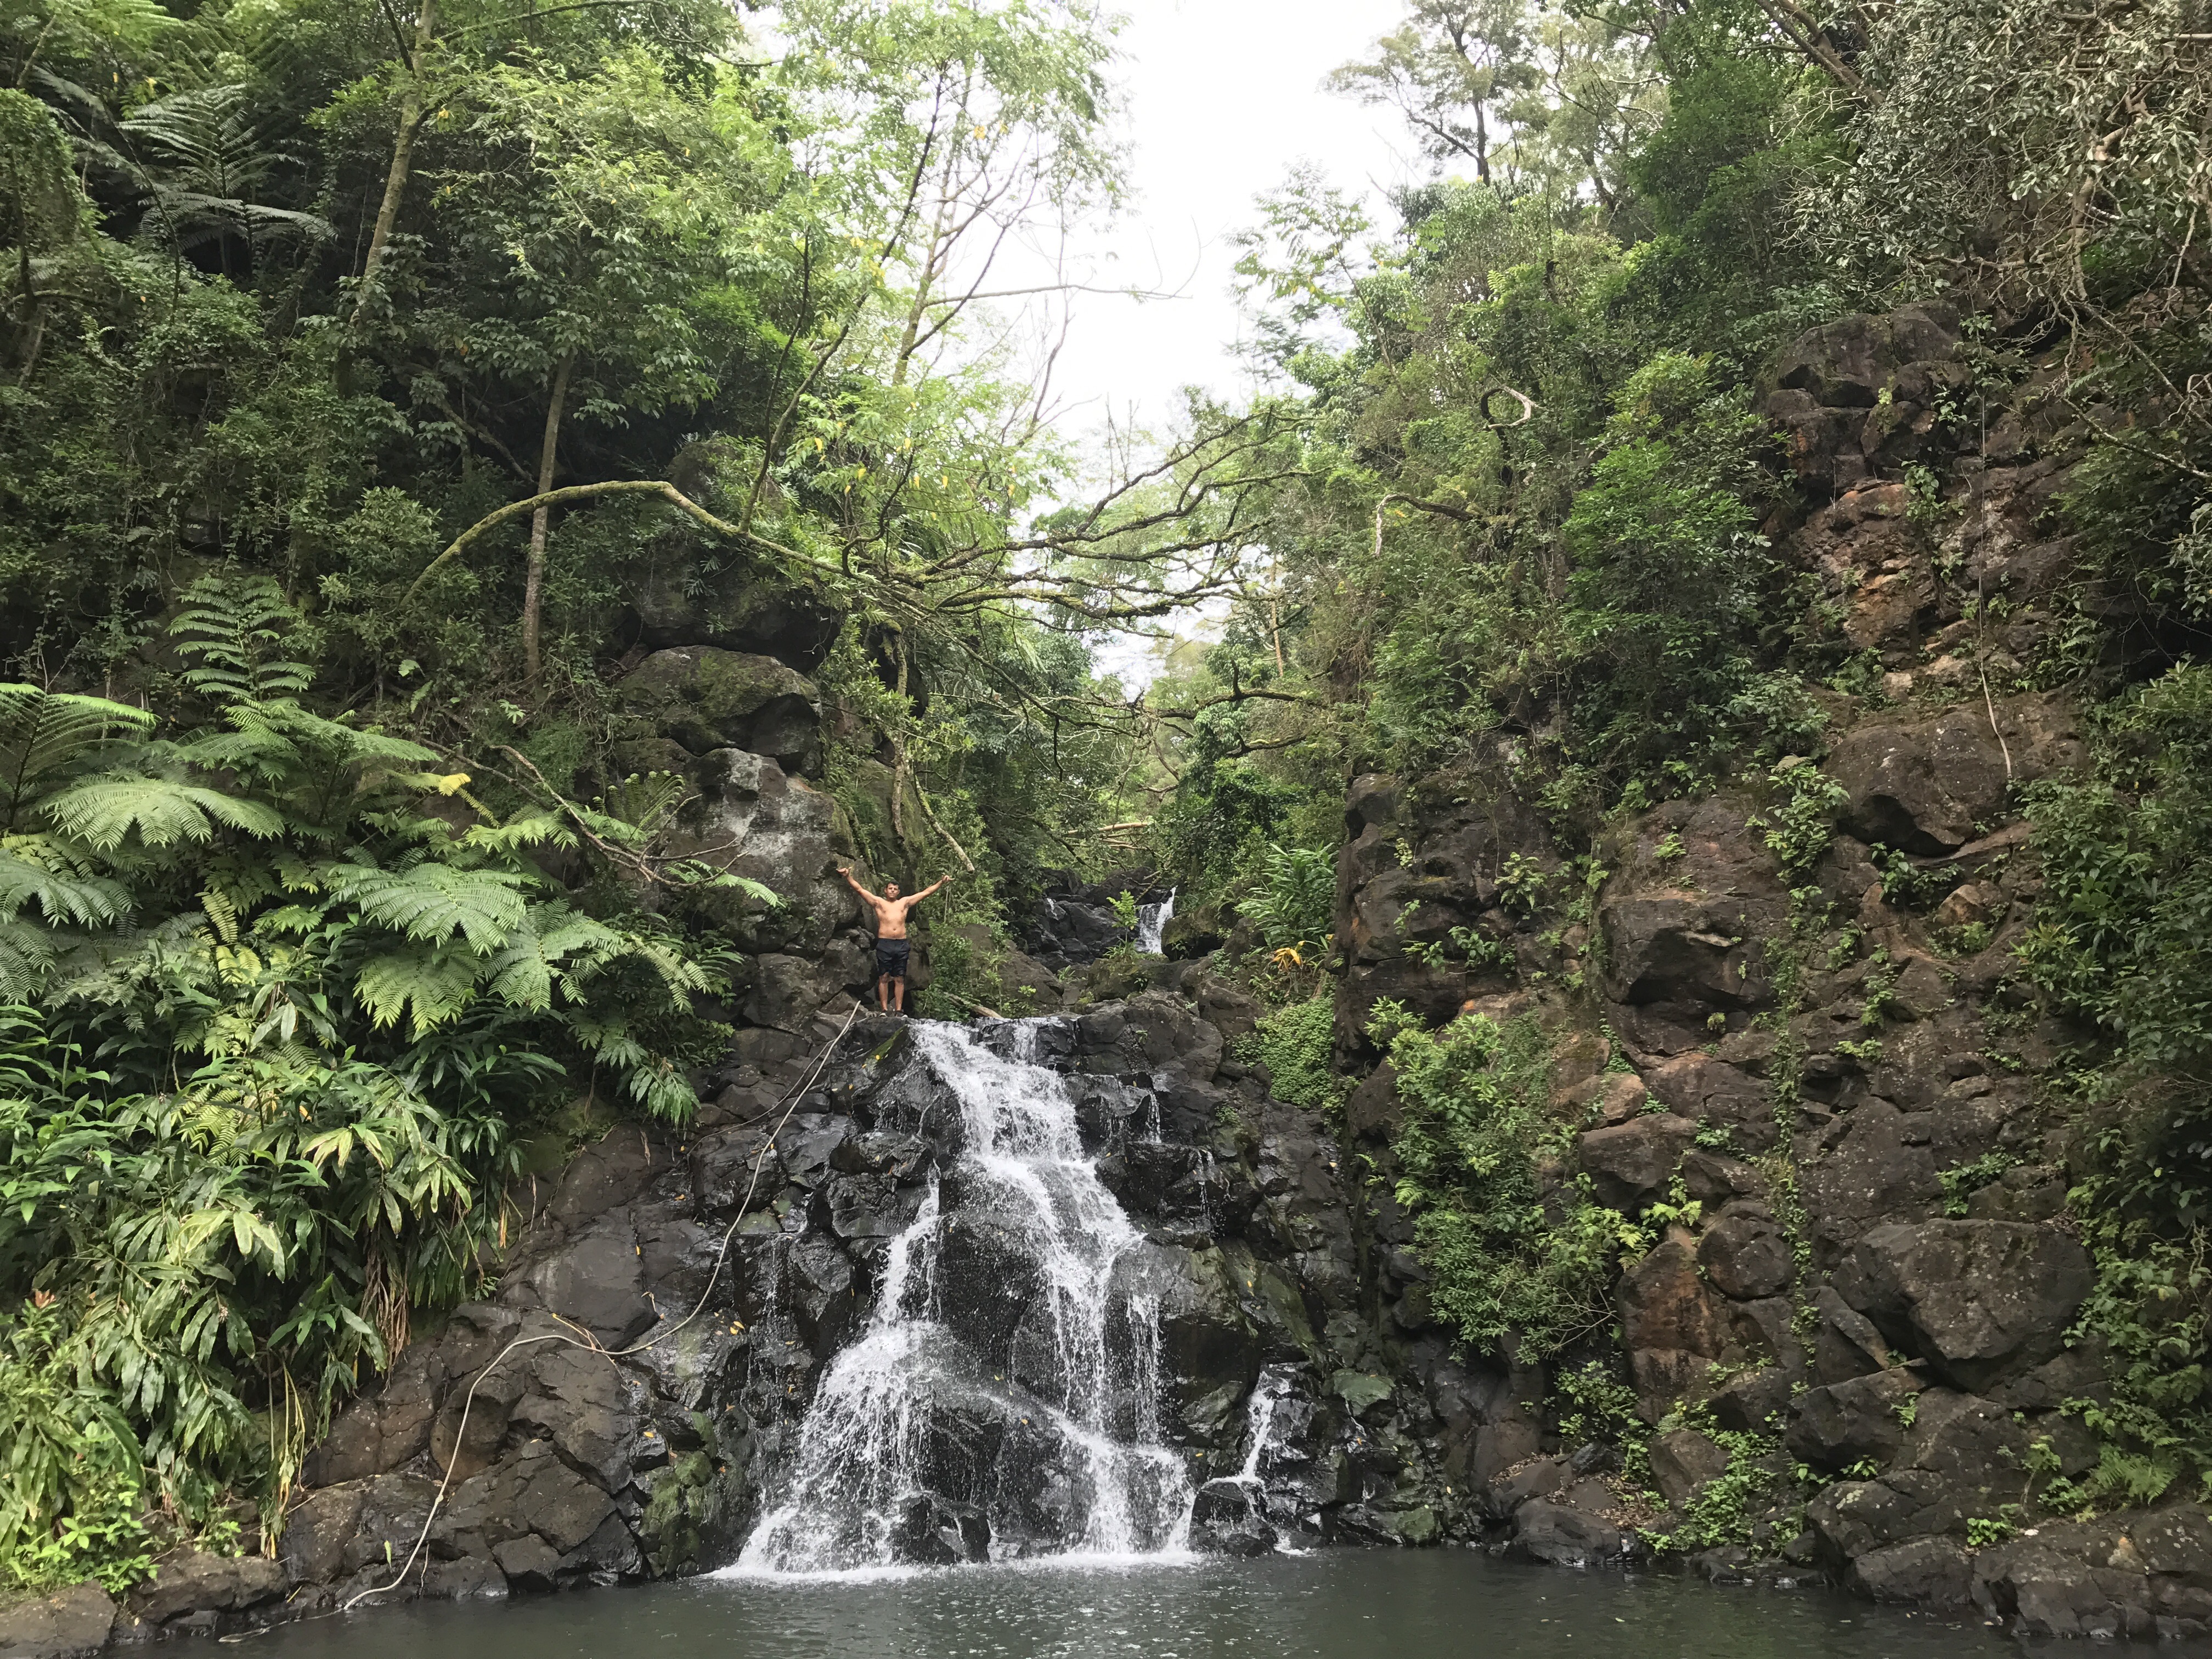 Hiking in Hawaii - Oahu full day tour to Kalihi Ice Ponds | Honolulu, HI